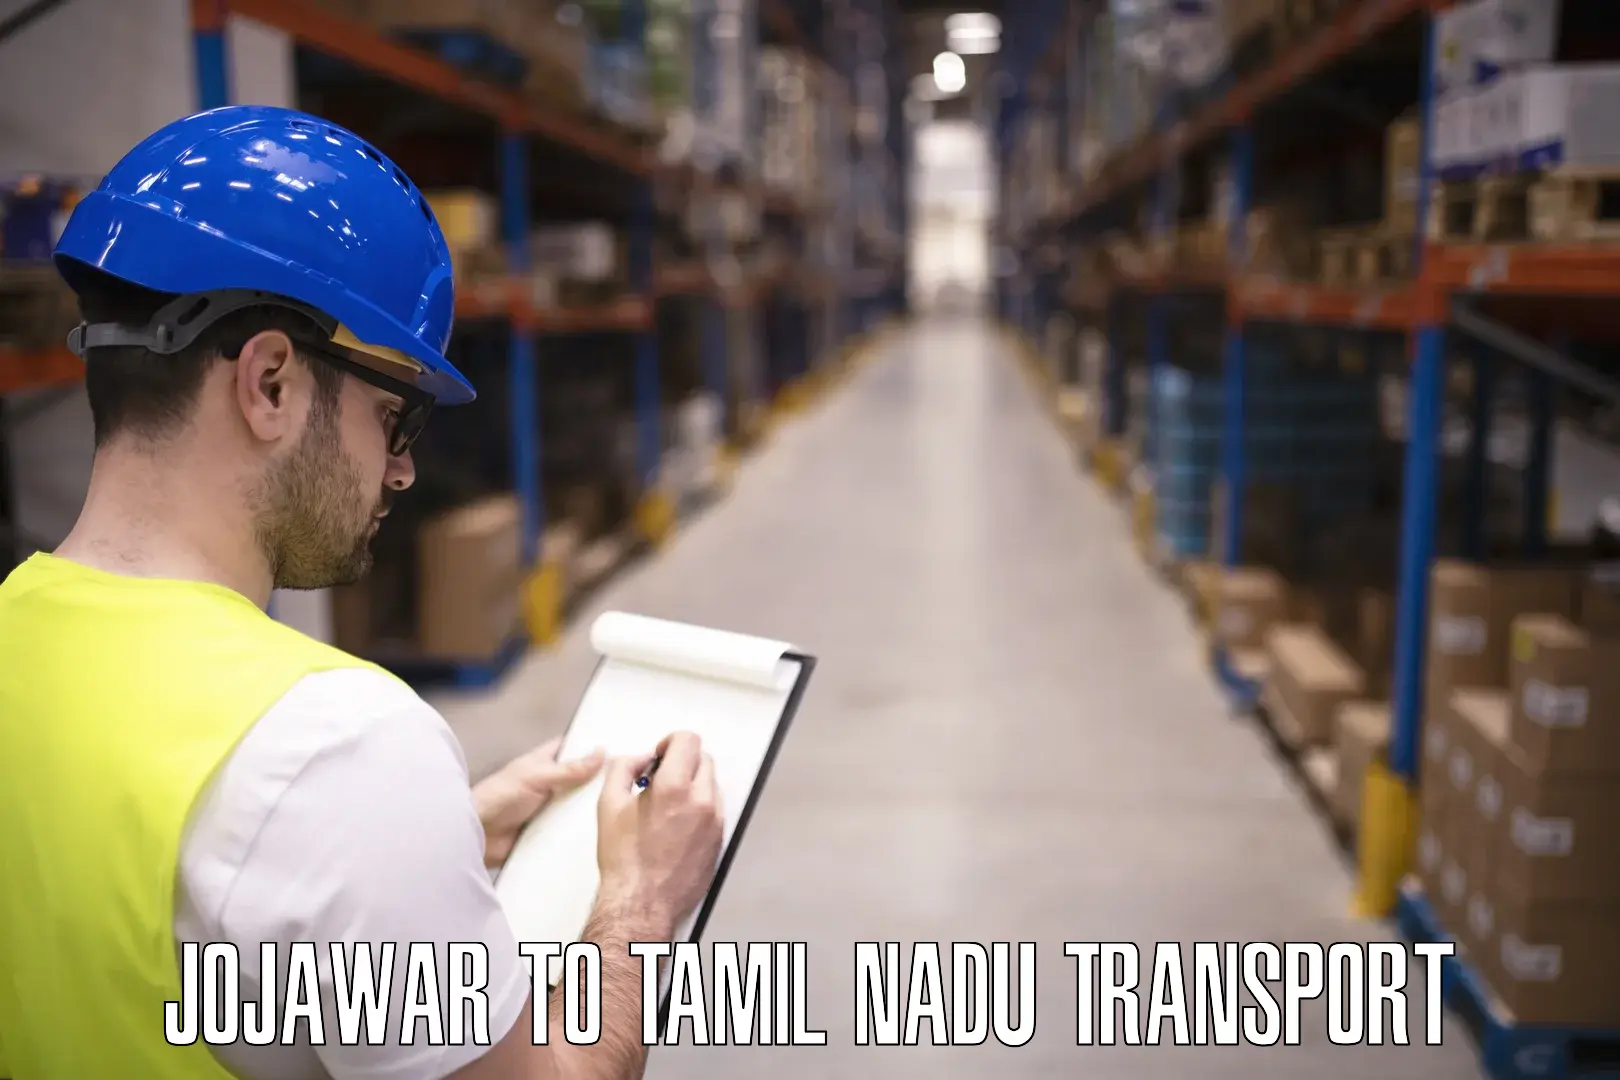 Domestic transport services in Jojawar to Tamil Nadu